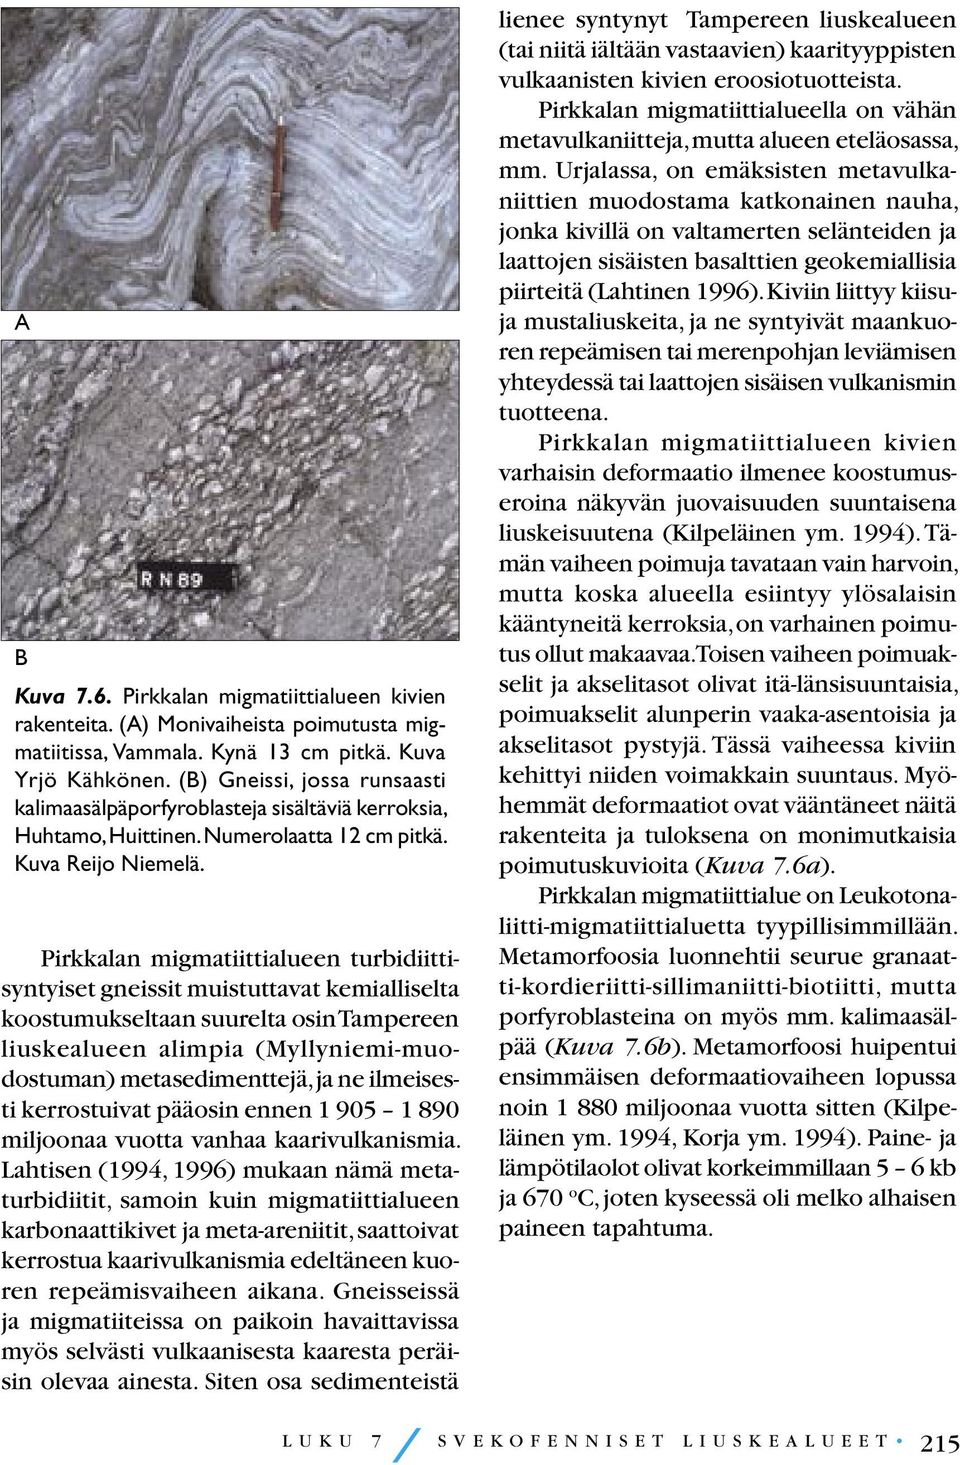 Pirkkalan migmatiittialueen turbidiittisyntyiset gneissit muistuttavat kemialliselta koostumukseltaan suurelta osin Tampereen liuskealueen alimpia (Myllyniemi-muodostuman) metasedimenttejä, ja ne